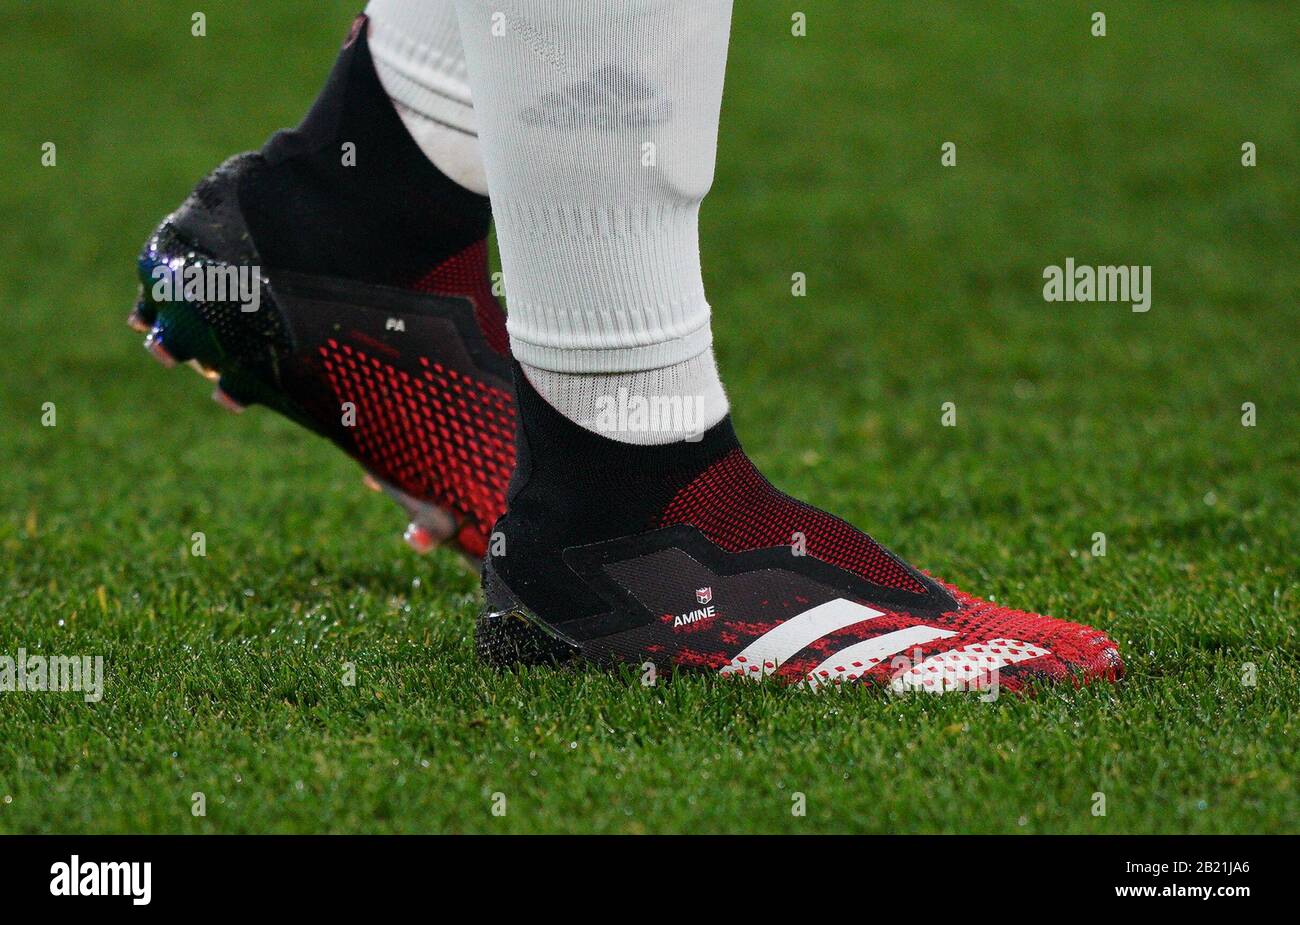 Londres, Reino Unido. 27 de febrero de 2020. Las botas de fútbol Adidas del Mesut  Ozil del Arsenal exhibiendo AMINA durante el partido de la Liga Europea de  la UEFA de 2.a